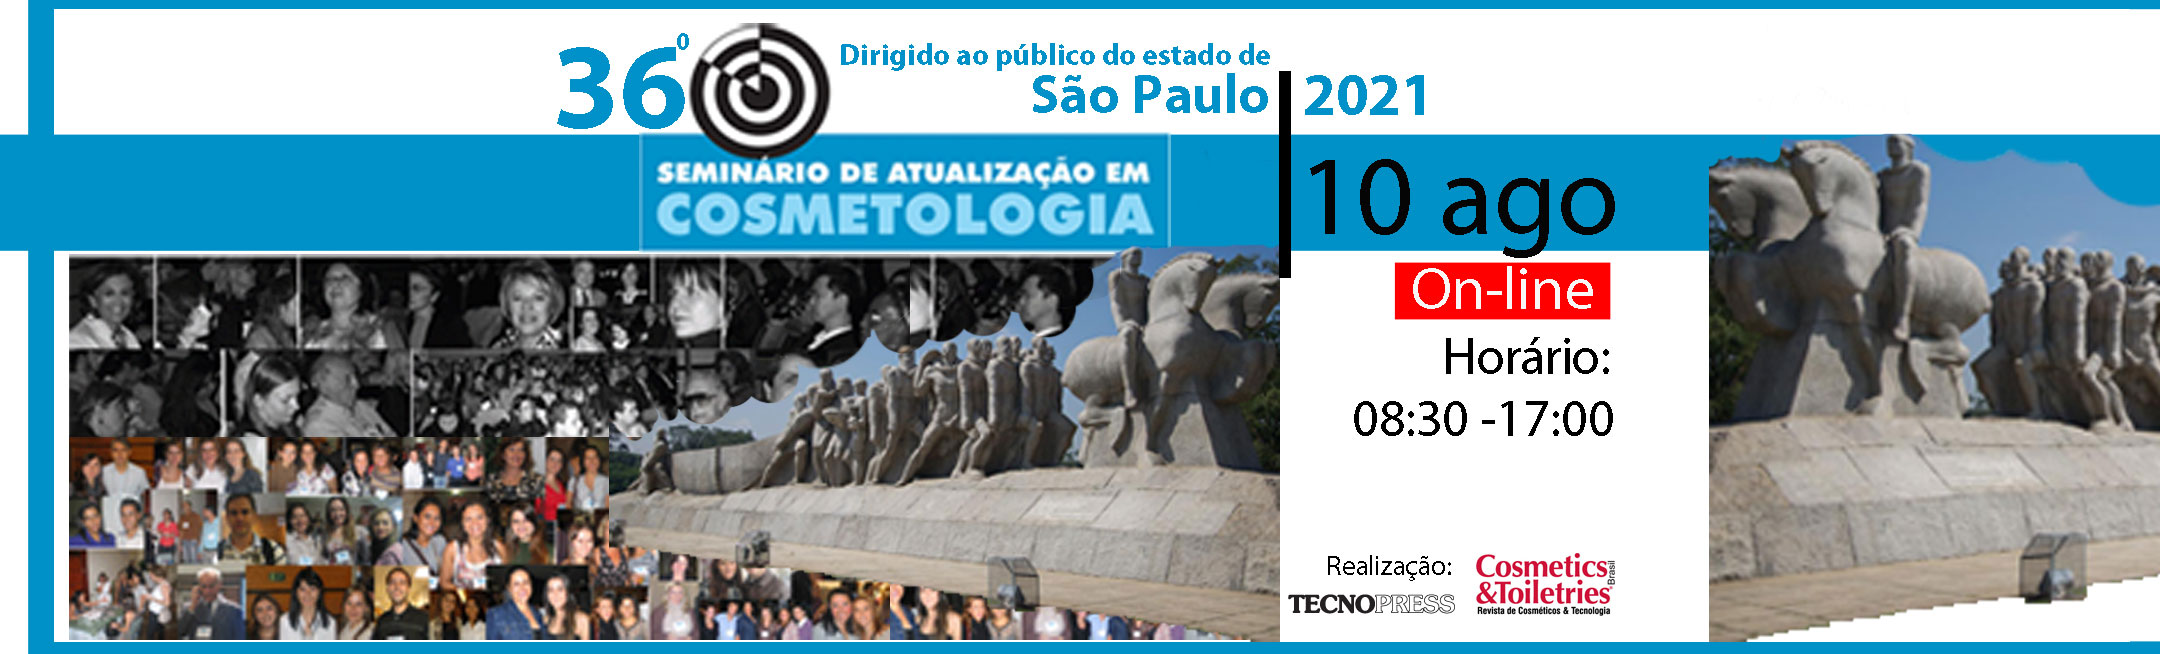 36º Seminário de Atualização em Cosmetologia de São Paulo